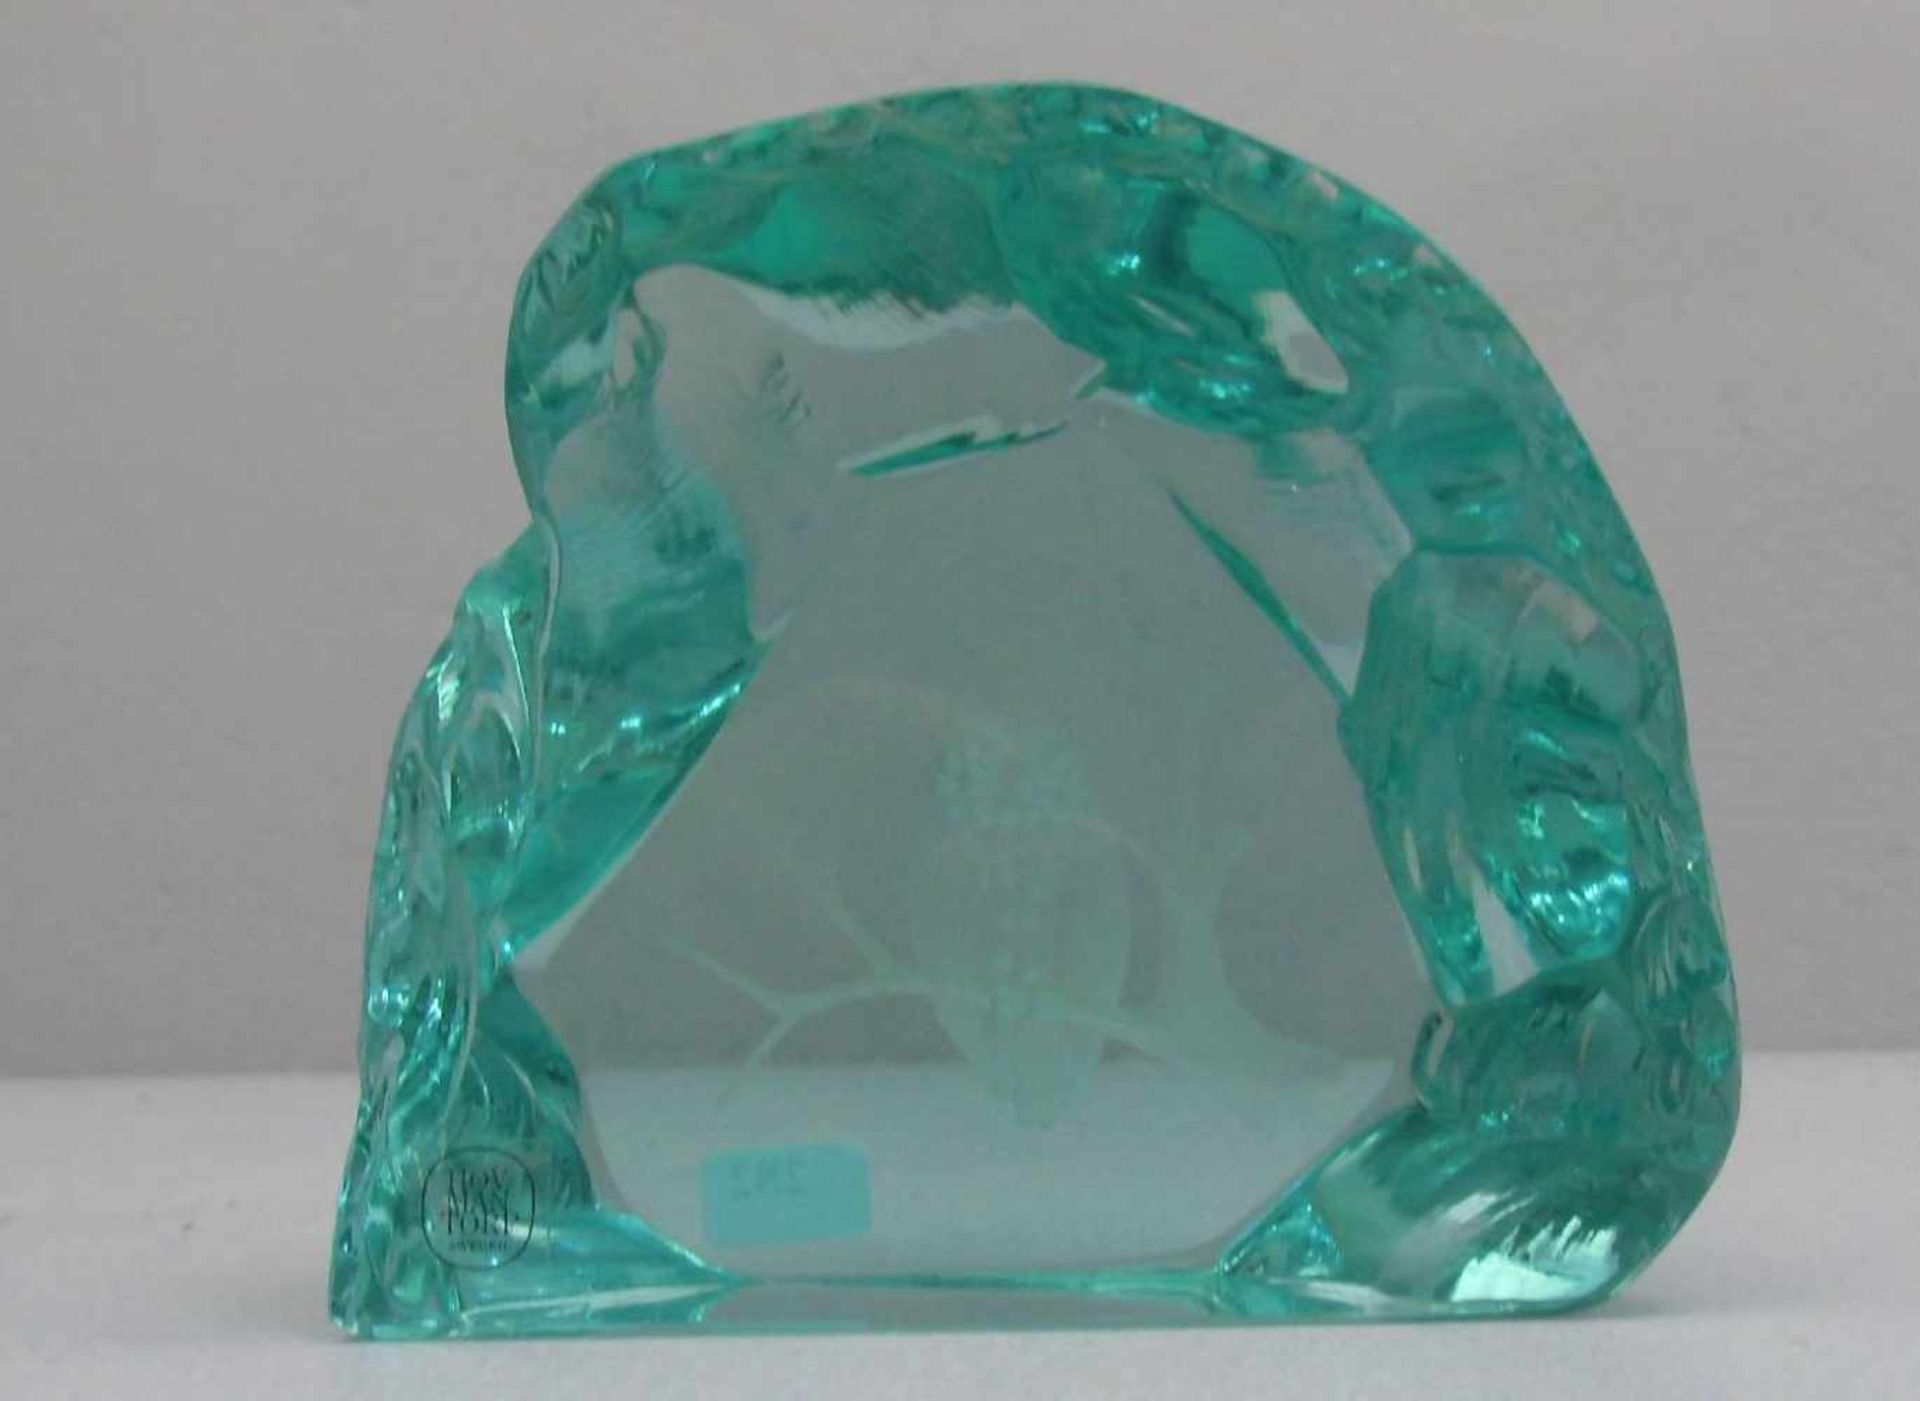 STRAND, RUNE und BÖRNESSEN, W., Glasskluptur / paperweight / Glasobjekt: "Eule", grünlich-blaues - Image 3 of 3